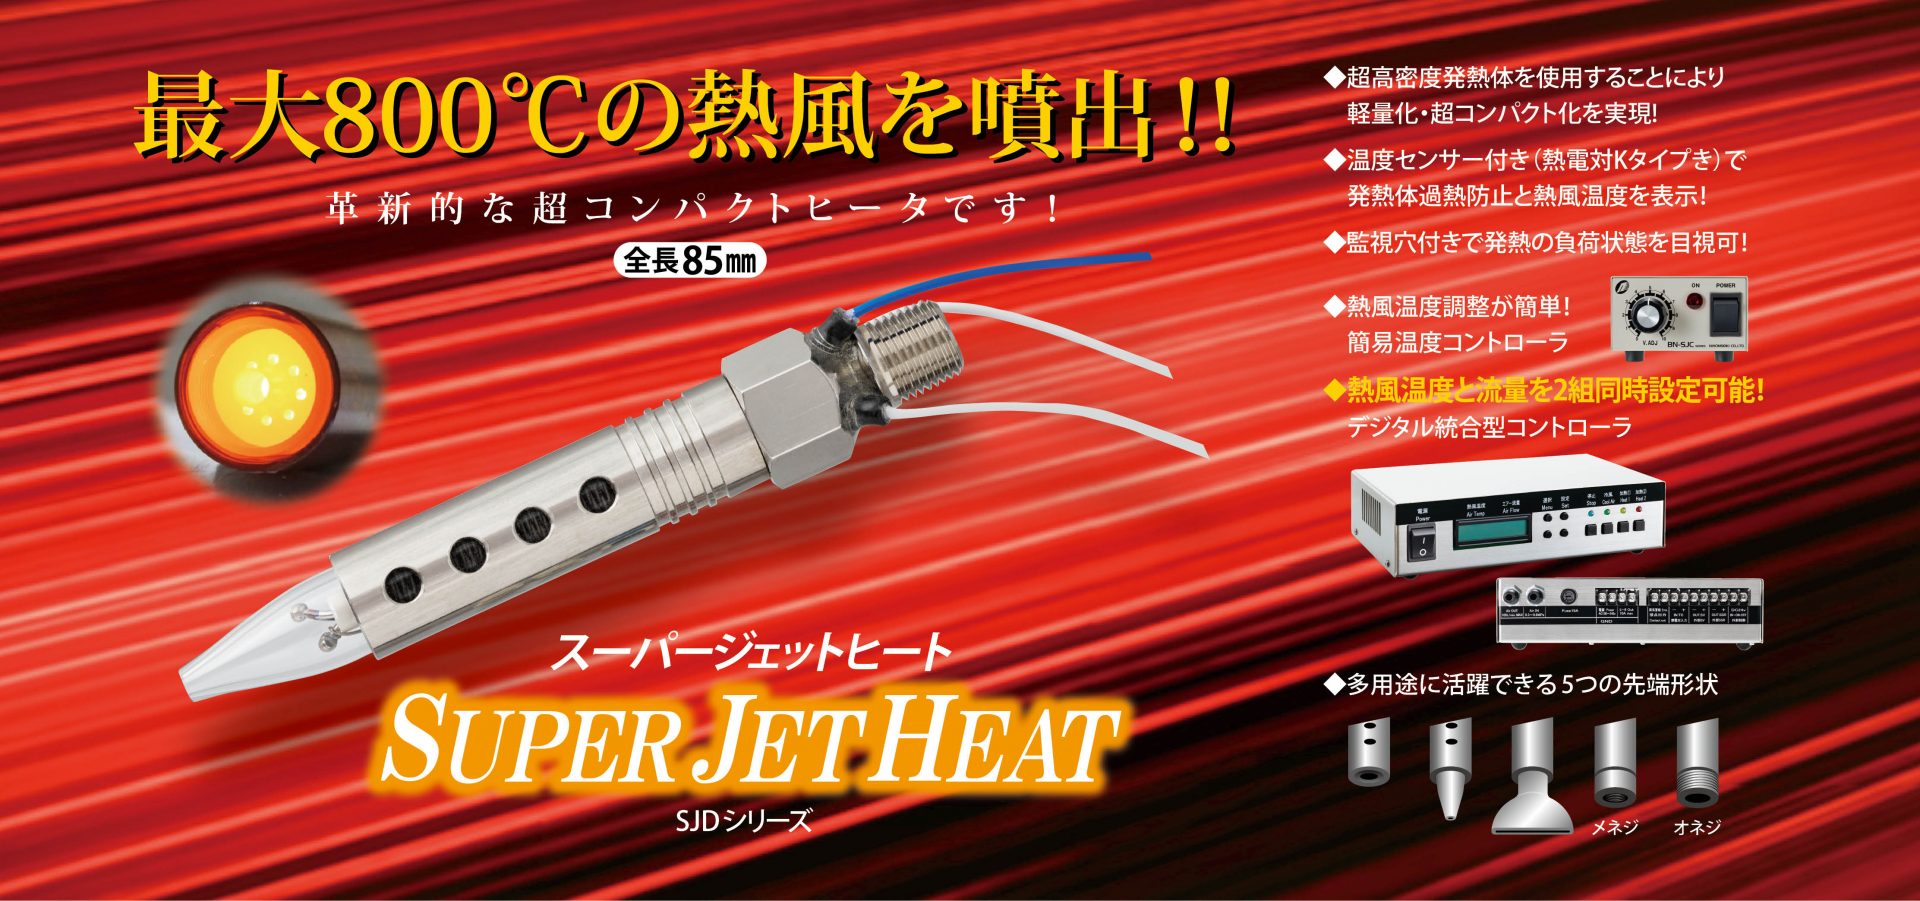 空気圧機器メーカー 日本精器株式会社